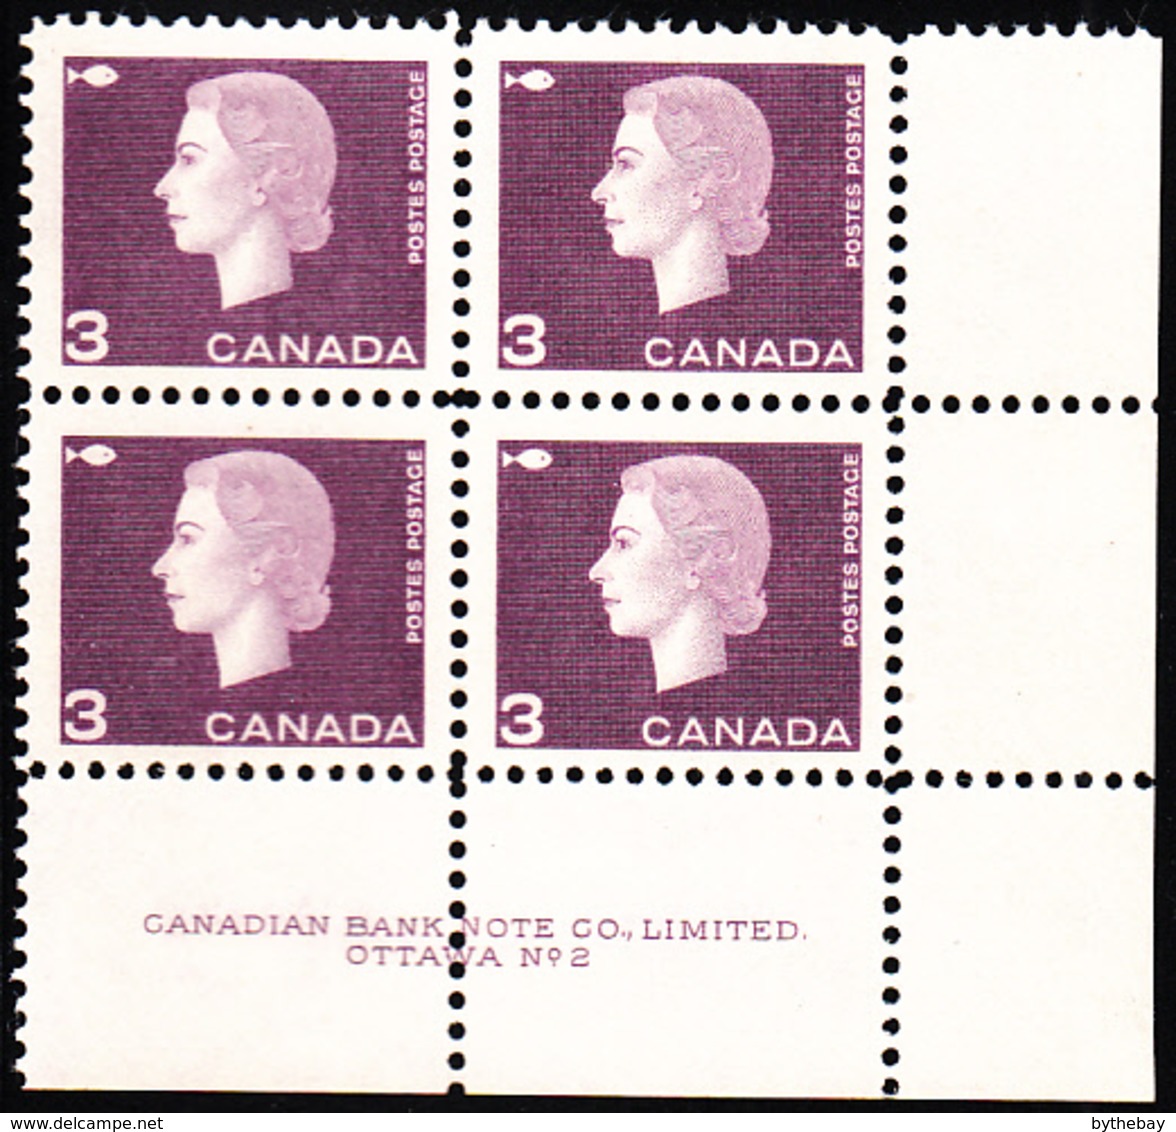 Canada 1963 MNH Sc #403 3c QEII Cameo Purple Plate #2 LR - Plattennummern & Inschriften